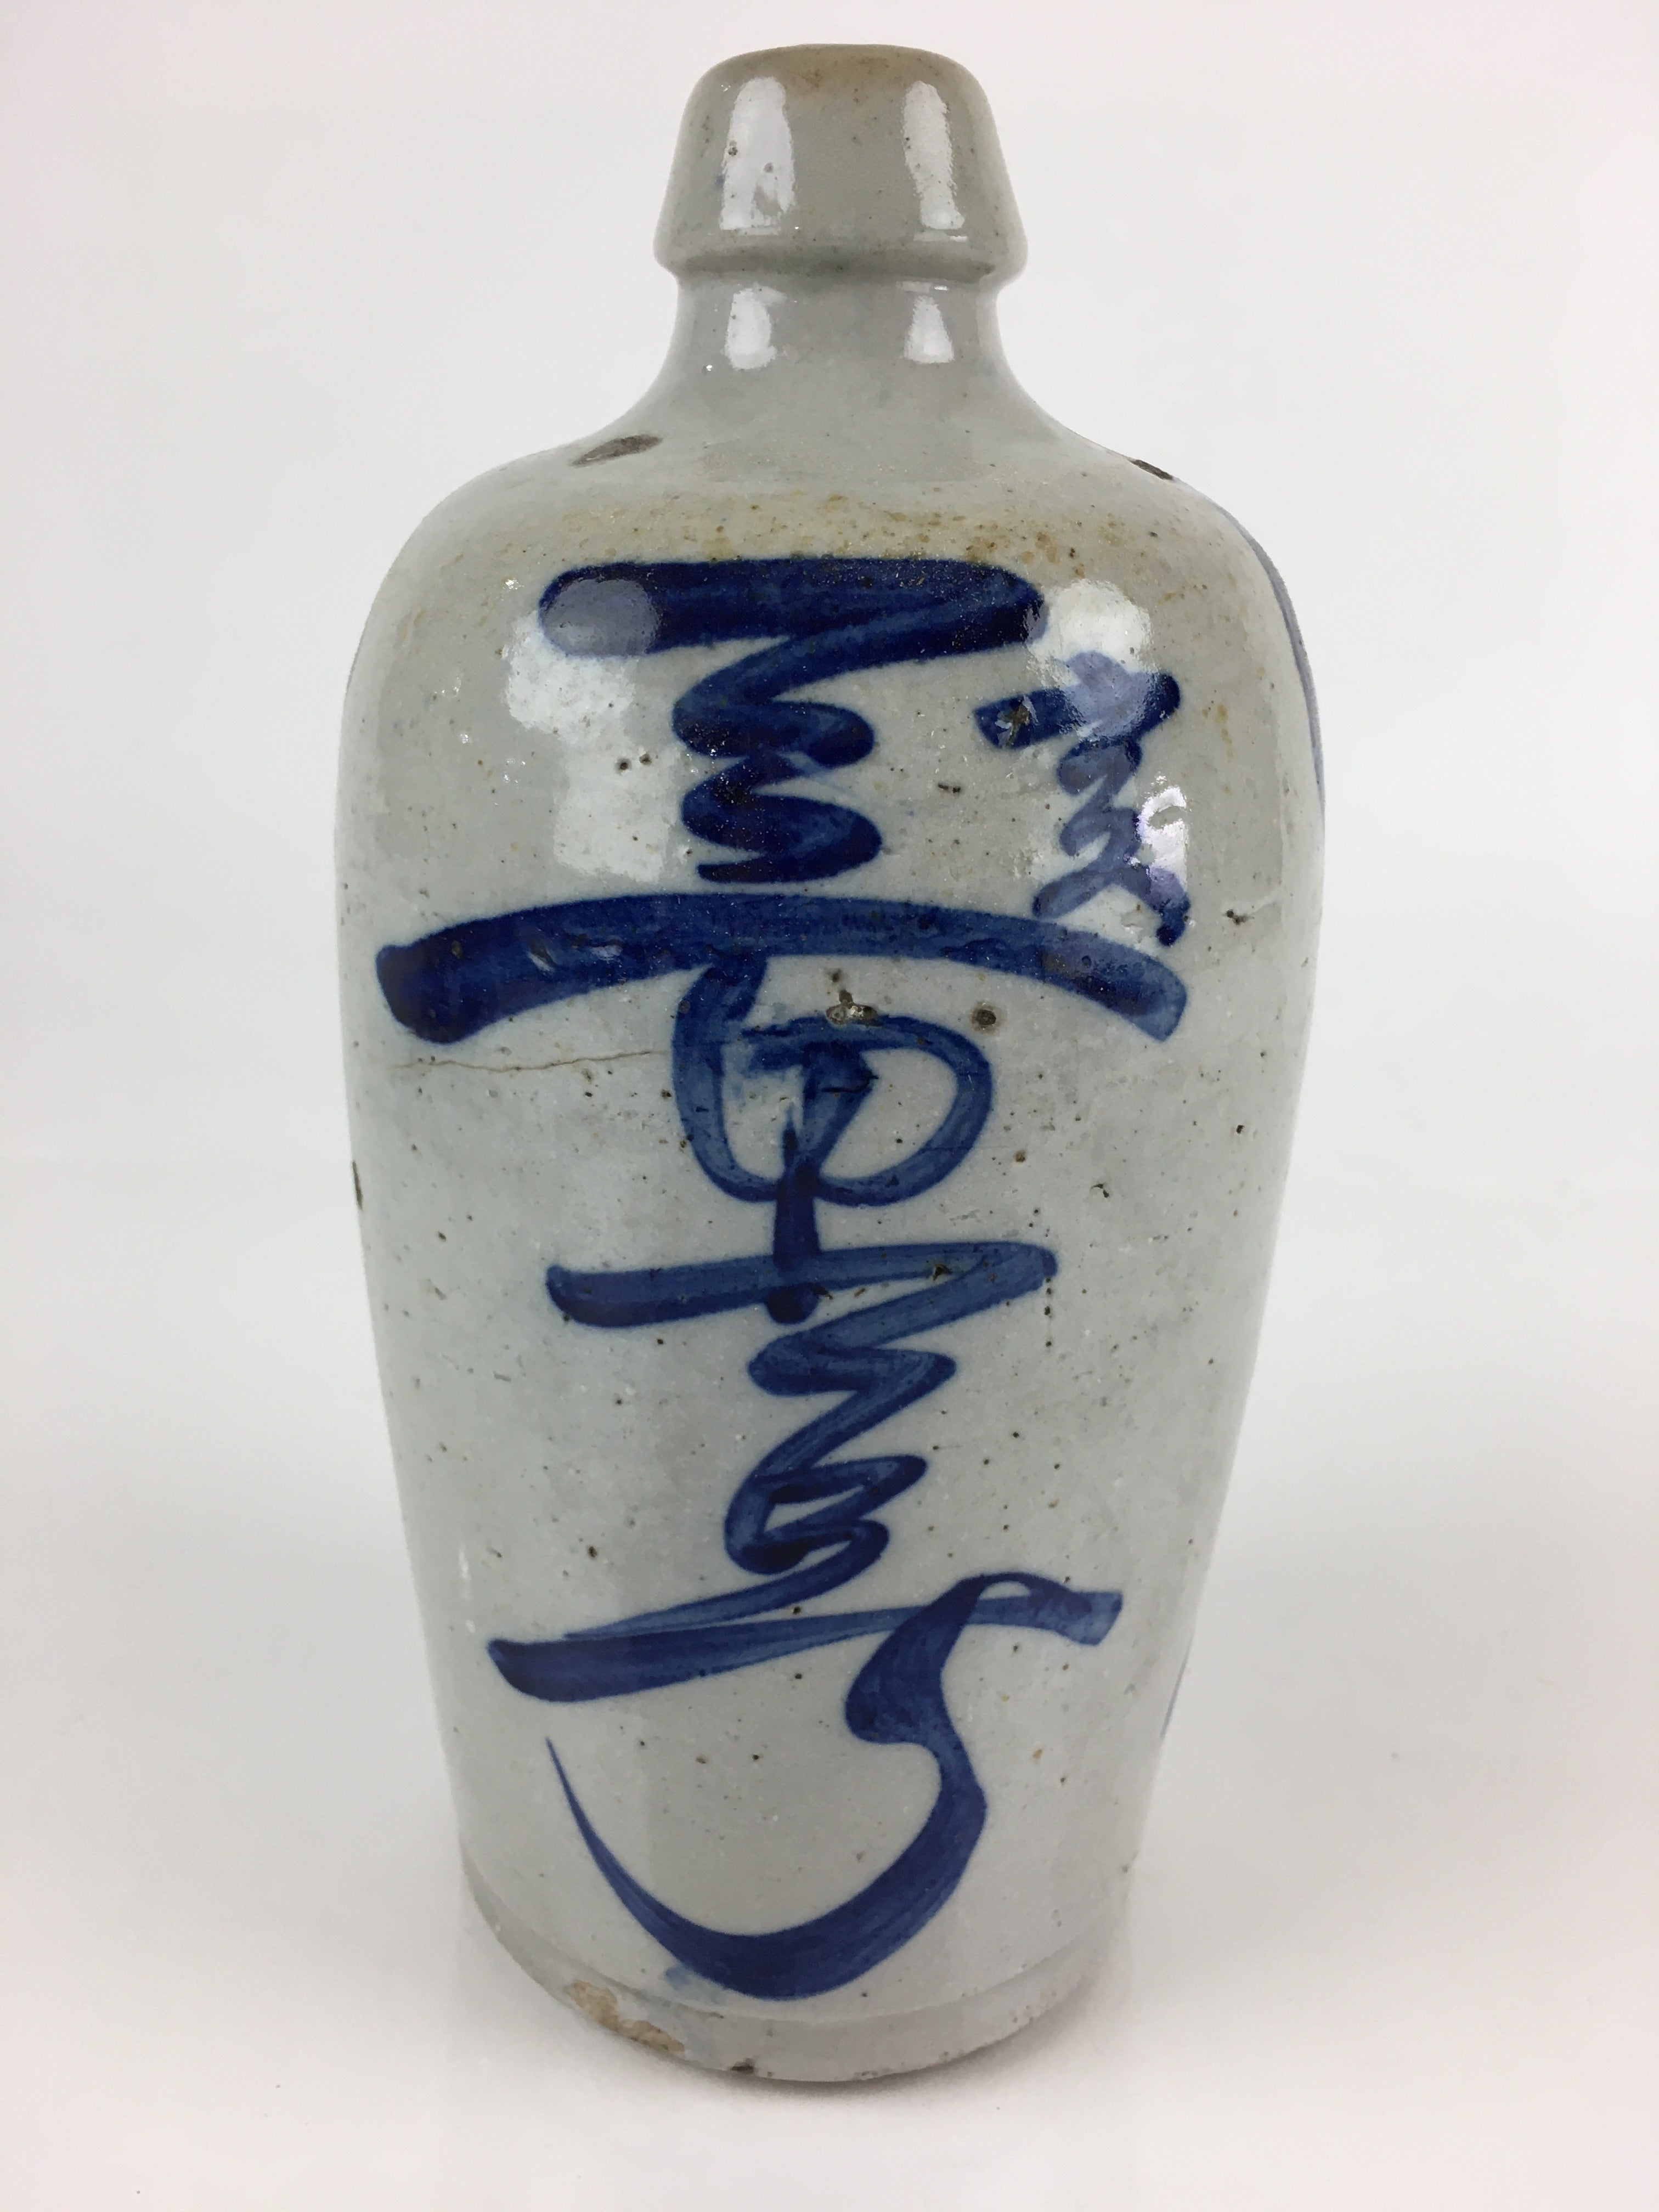 Japanese Ceramic Sake Bottle Tokkuri Vtg Pottery Gray Hand-Written Kanji TS422